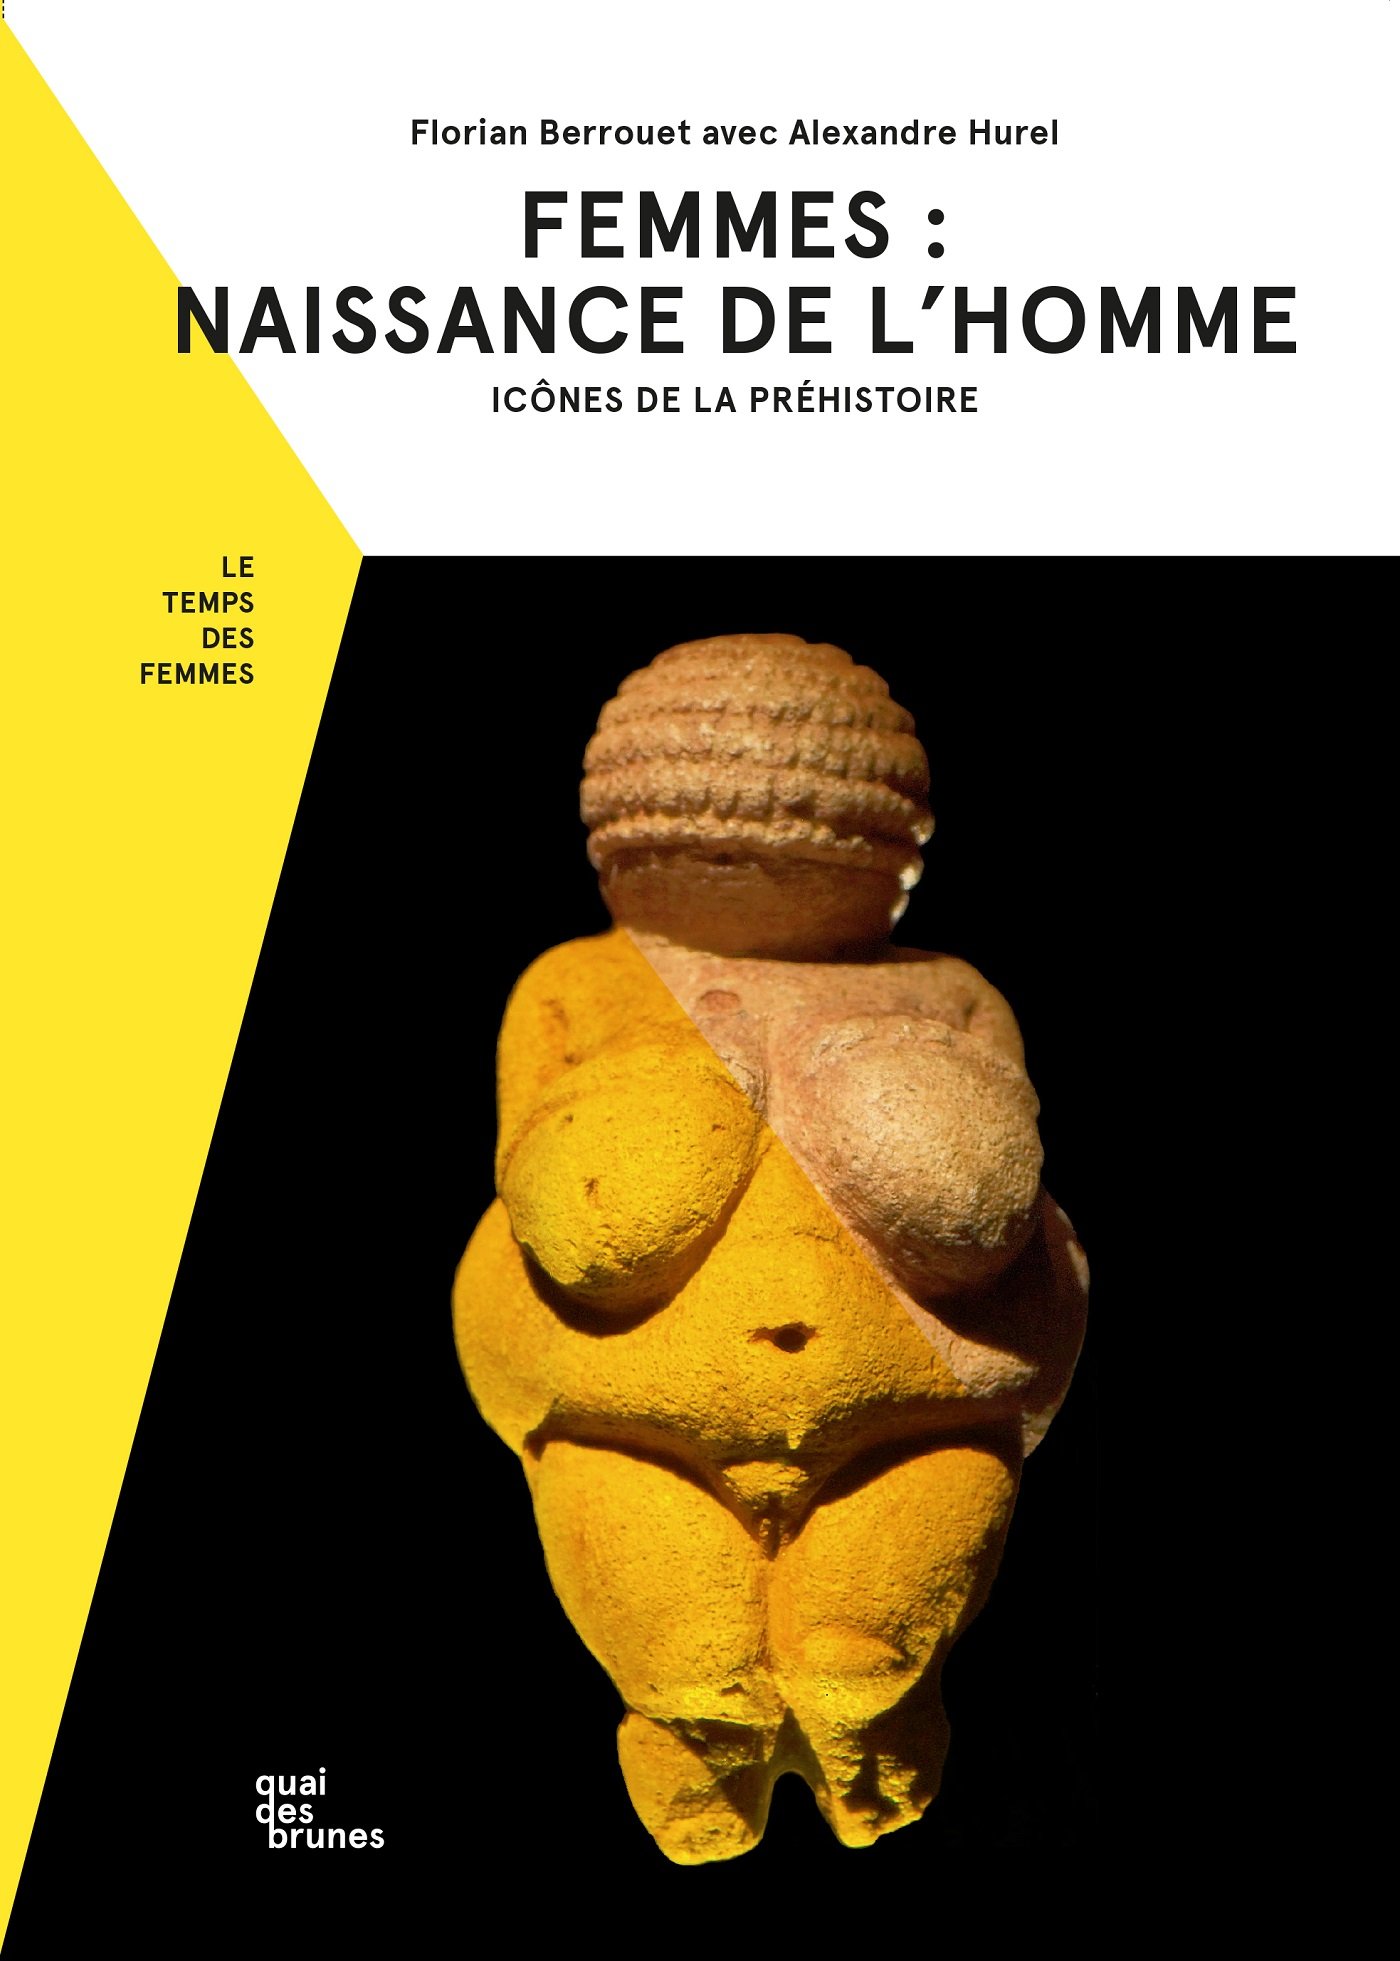 Femmes : naissance de l'homme. Icônes de la préhistoire, 2018, 103 p.